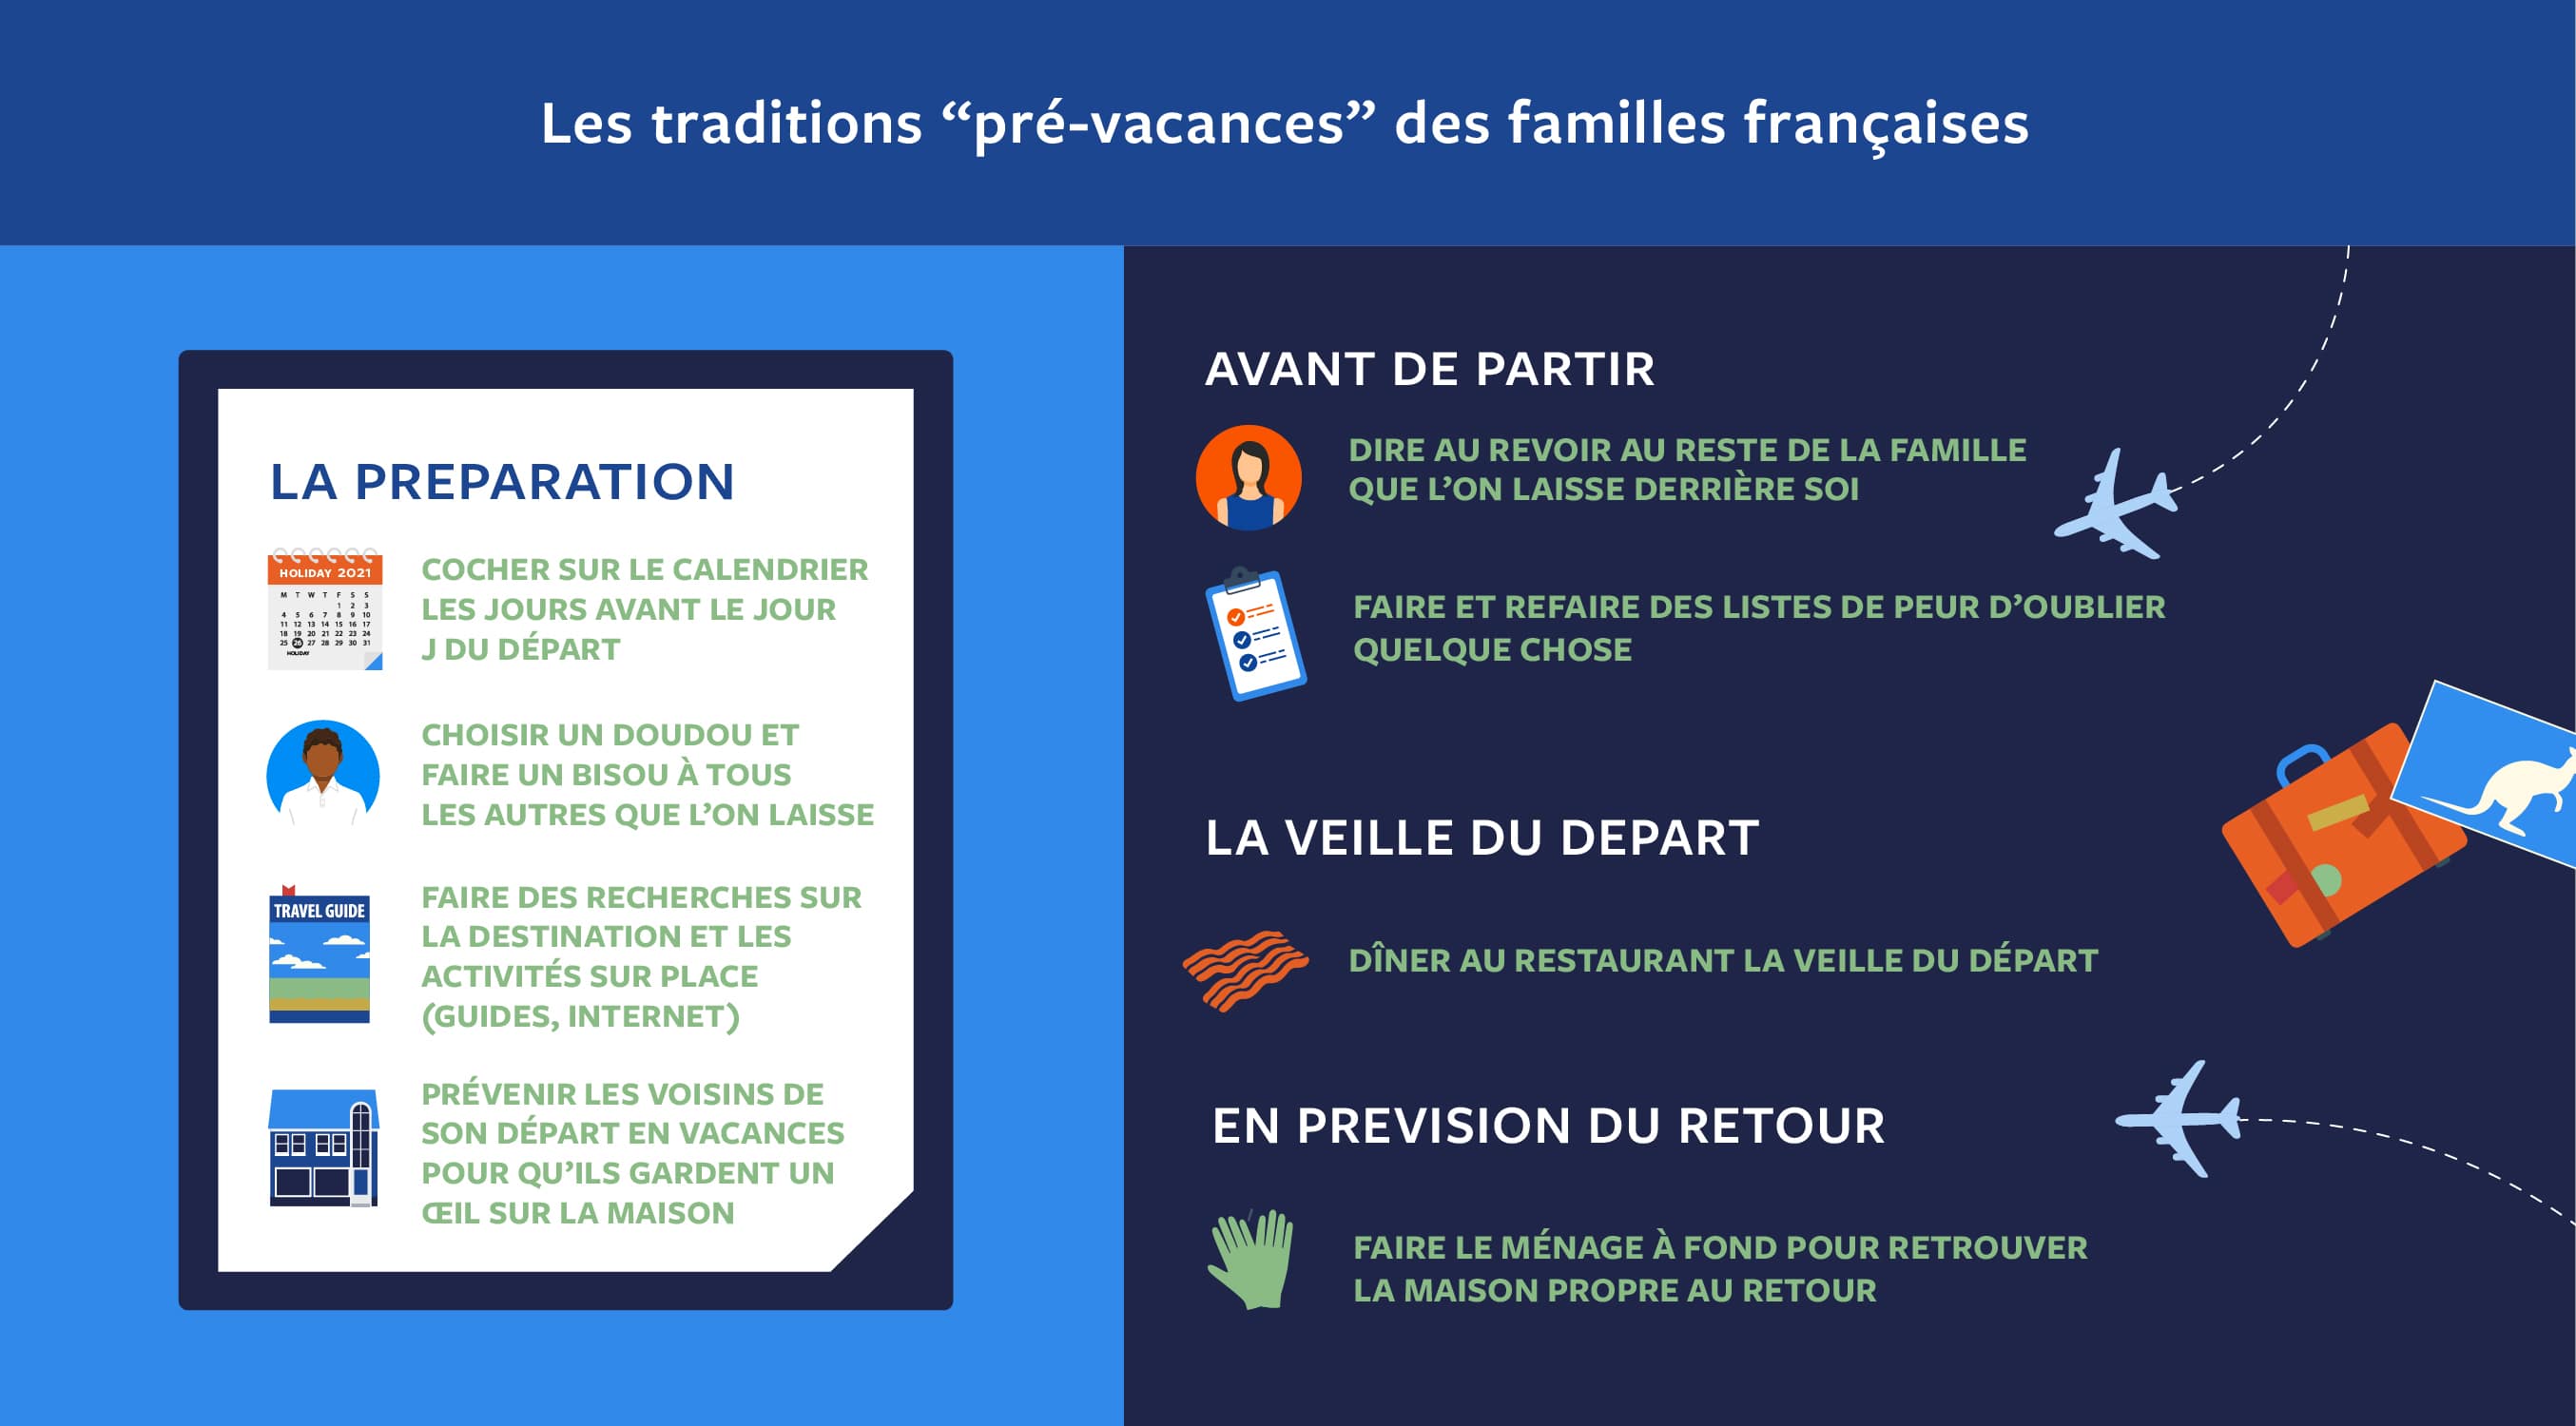 Traditions des familles françaises avant les vacances  